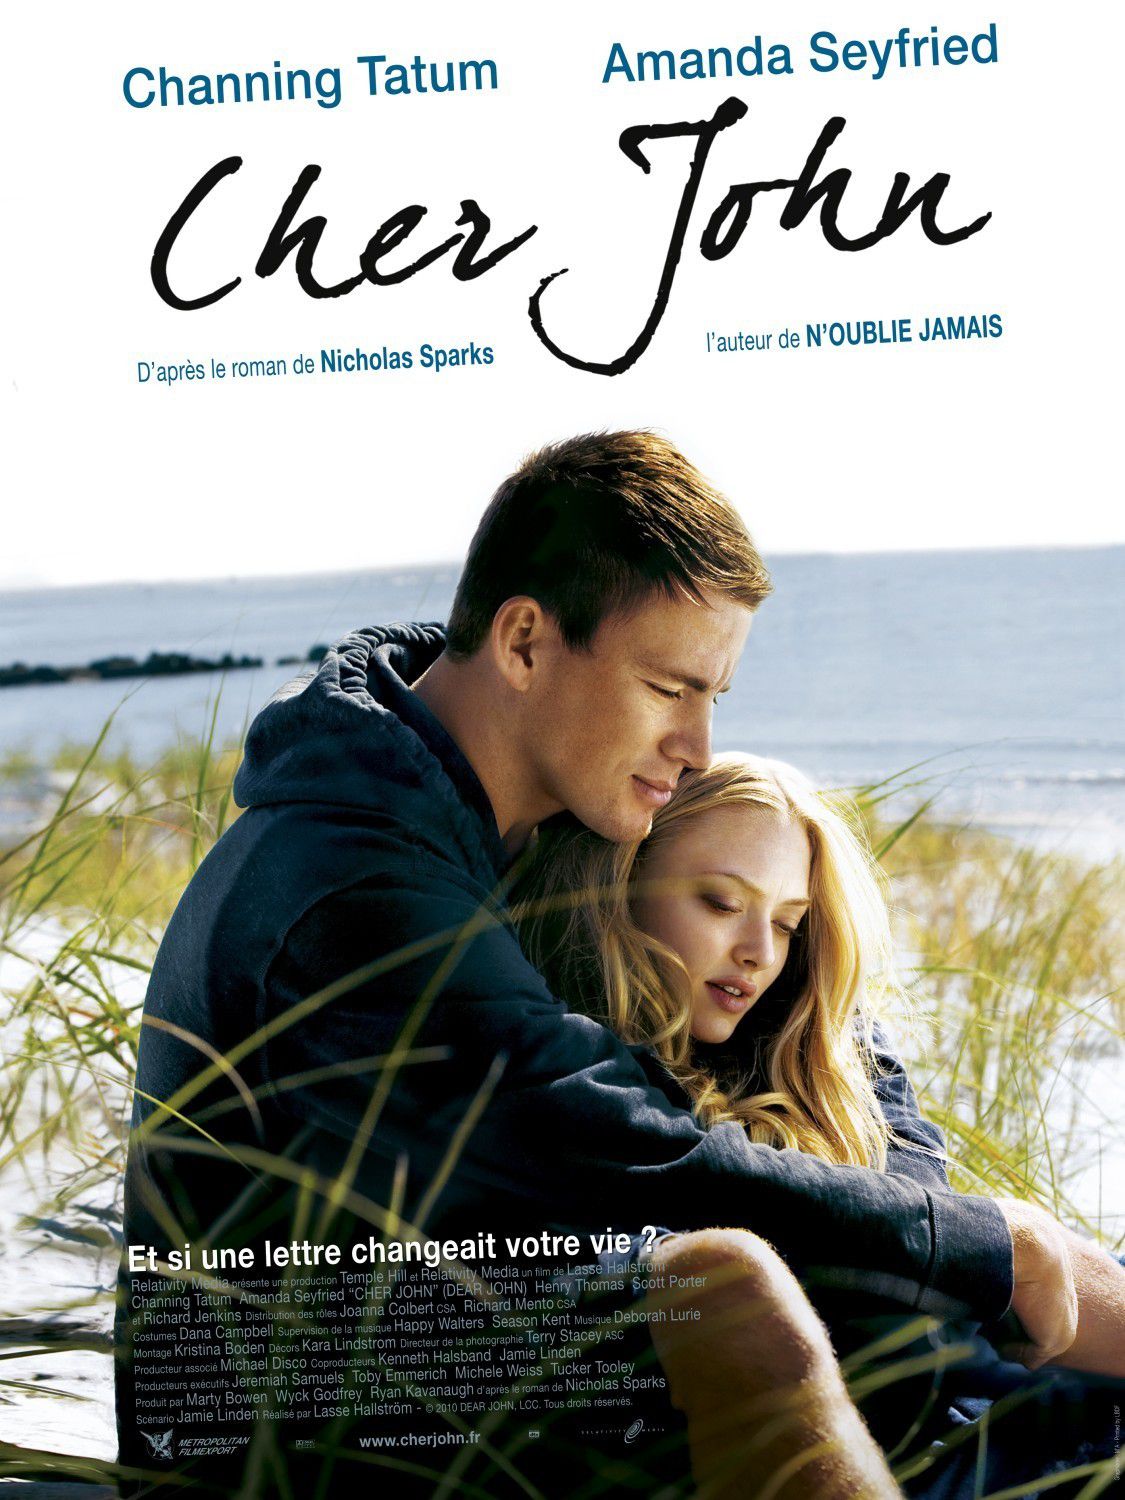 Cher John - Film (2010)